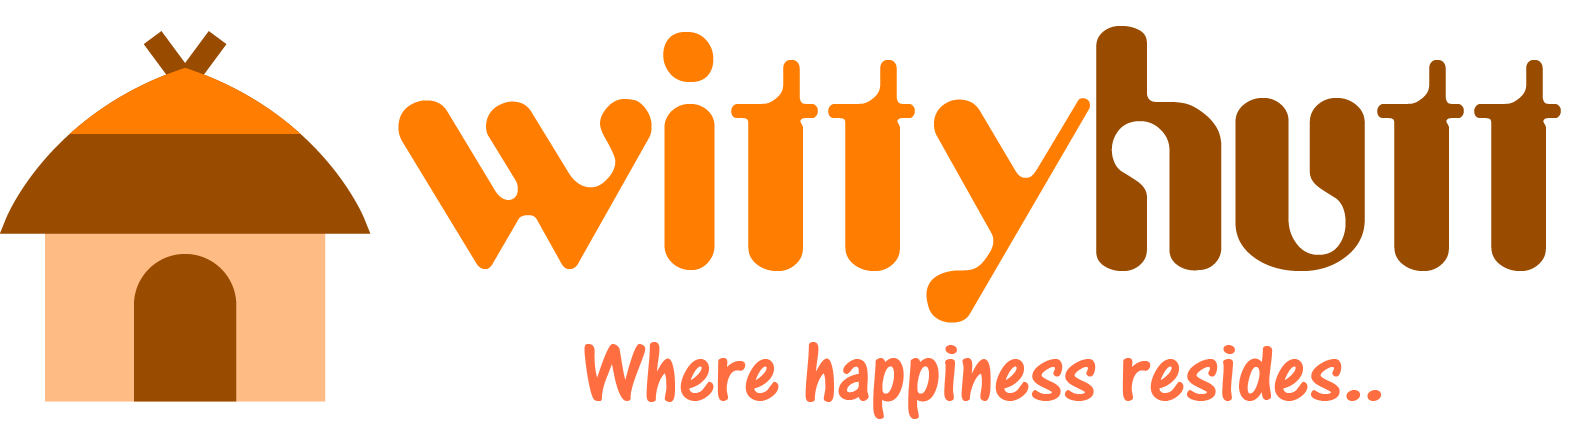 Wittyhutt